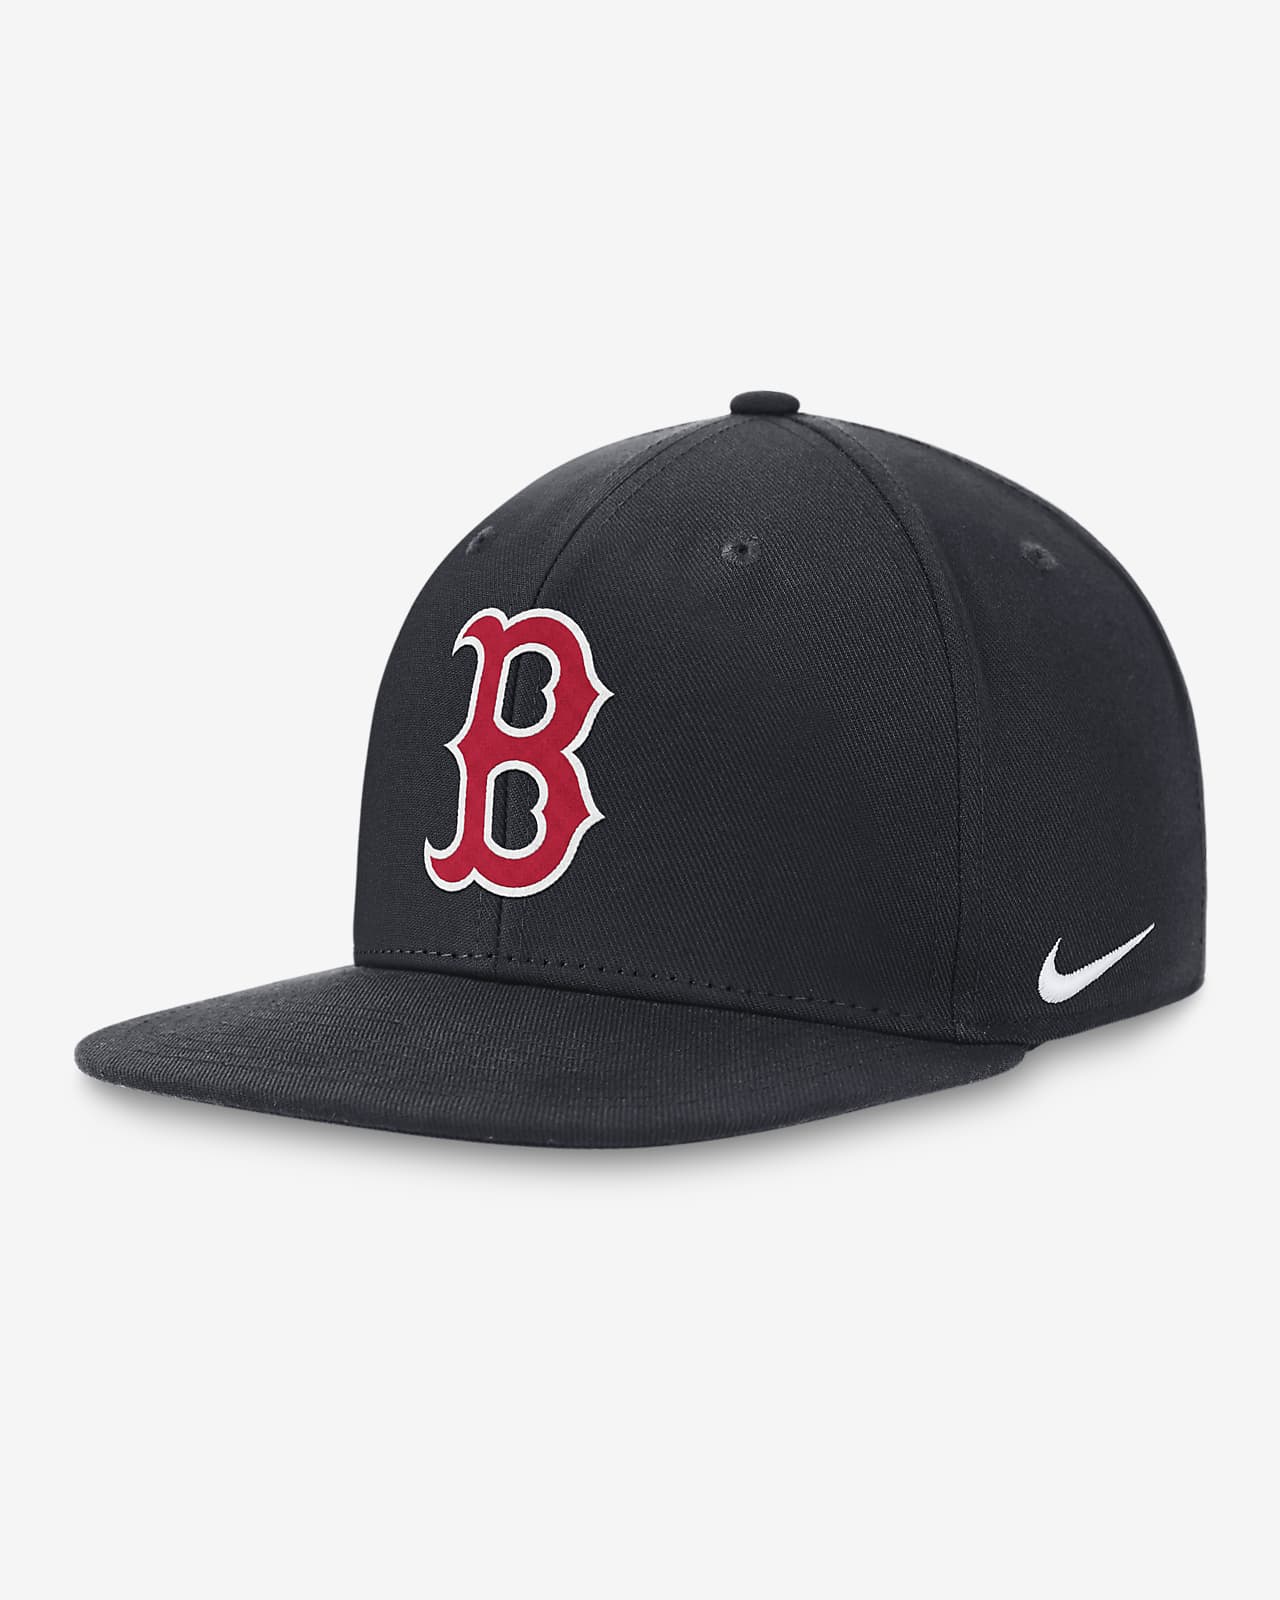 sox baseball cap